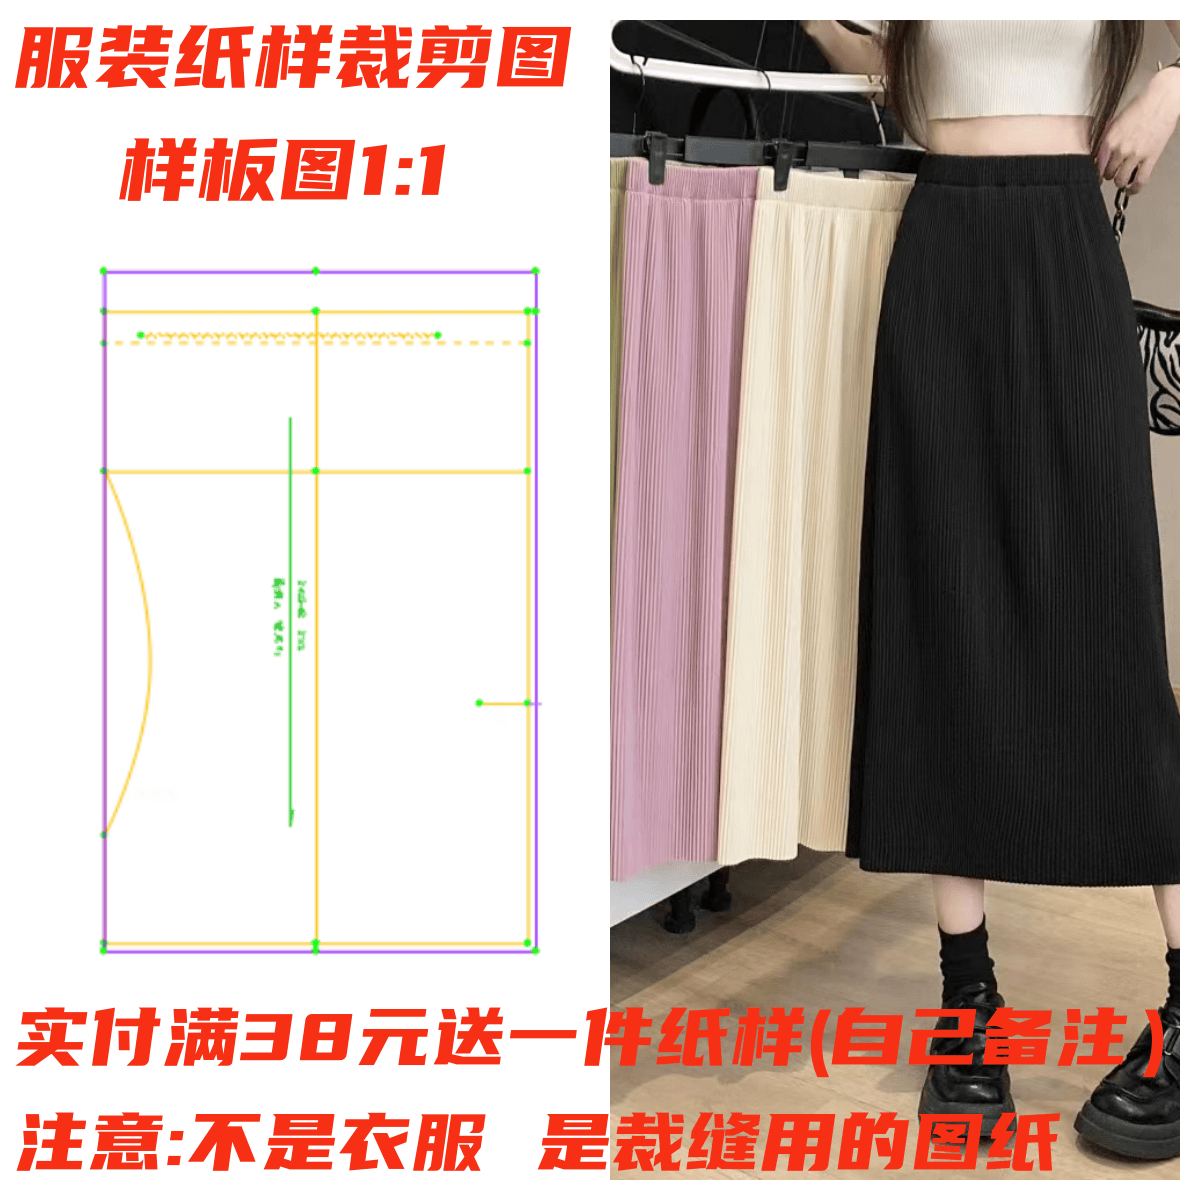 制作裙子的款式图1242款垂感一片式连腰半身裙纸样服装DIY裁剪1:1